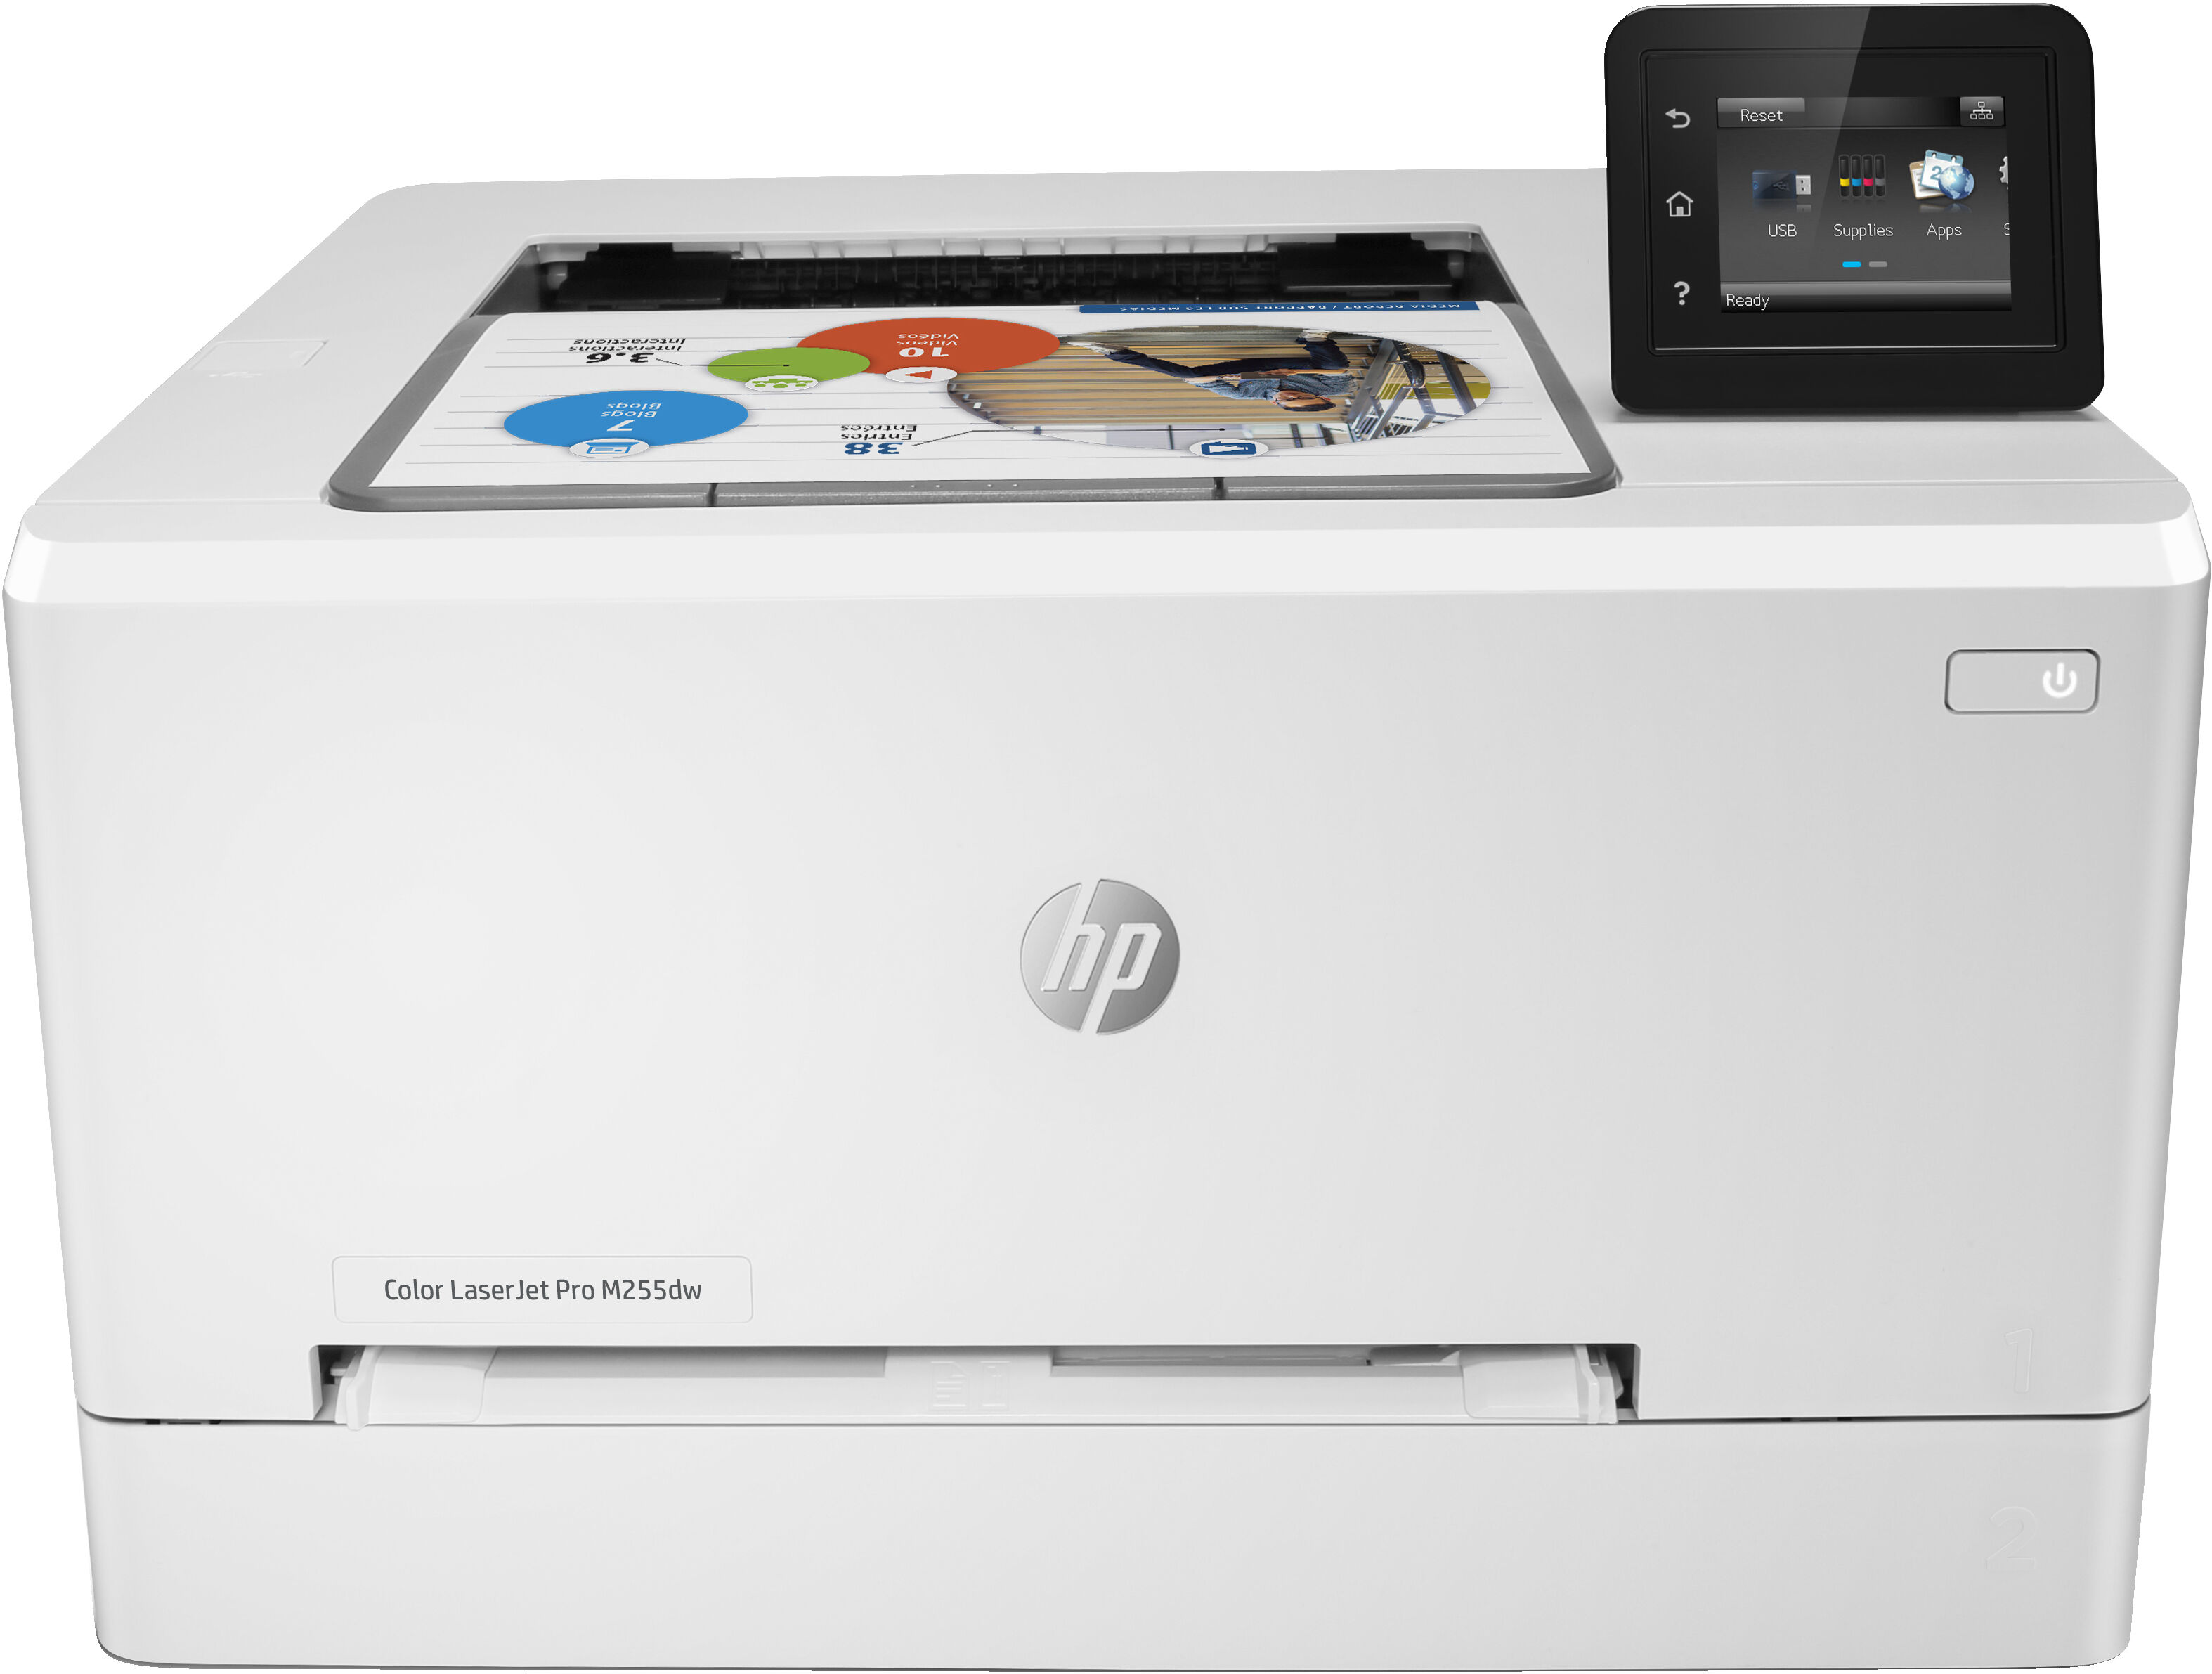 HP Stampante laser  Color LaserJet Pro M255dw, Colore, per Stampa, Stampa fronte/retro; risparmio energetico; avanzate funzionalità di sicurezza; Wi-Fi dual band [7KW64A]